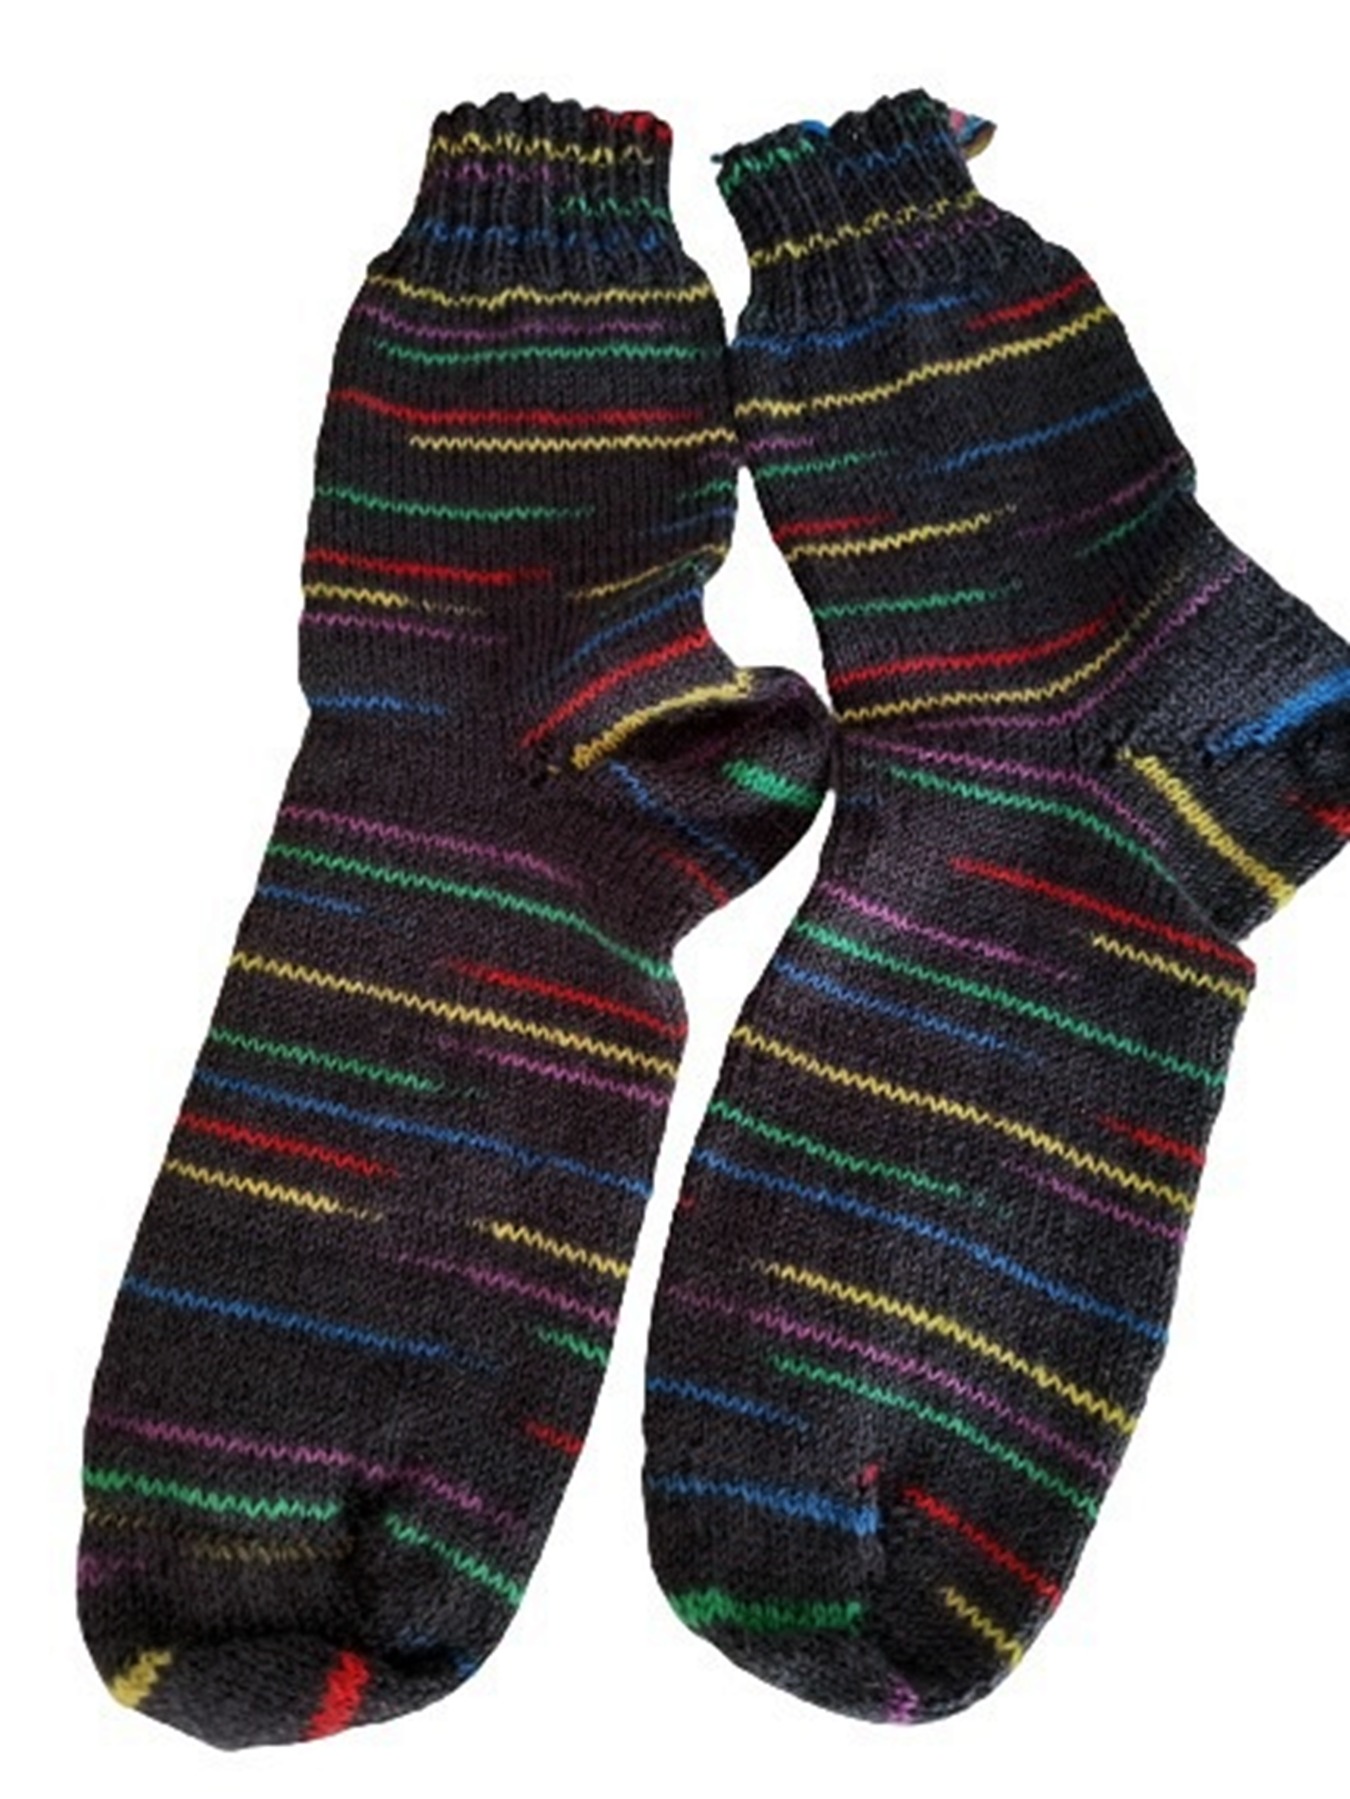 Socken Größe 42/43 handgestrickt